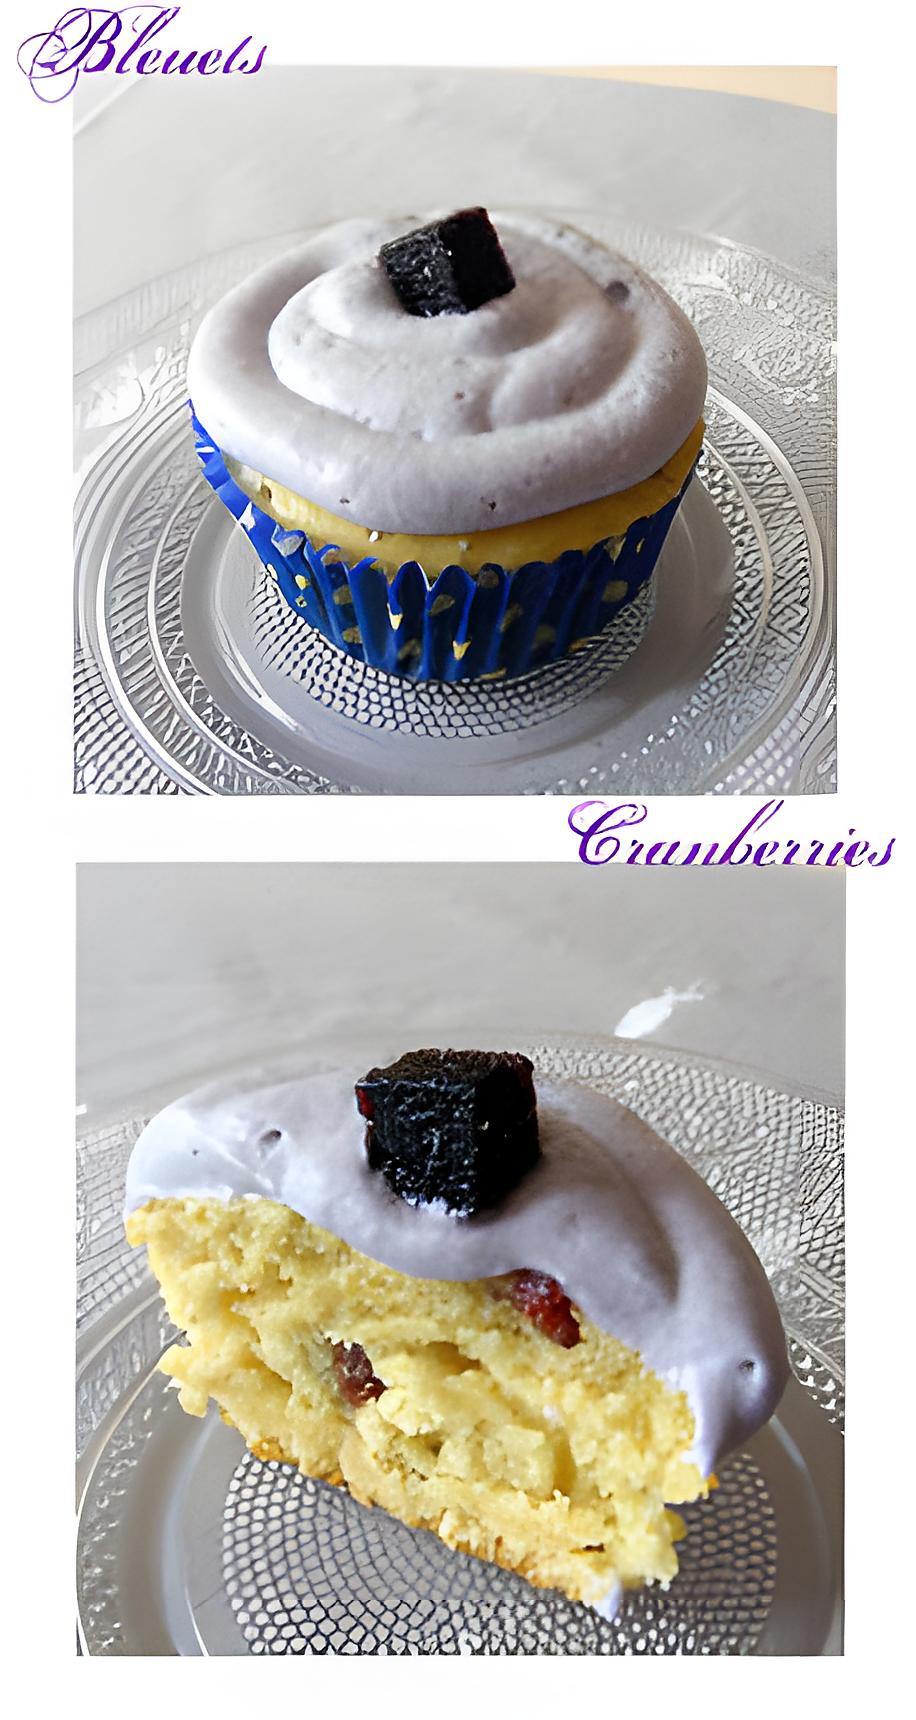 recette Cupcakes aux cranberries & bleuets (myrtilles)